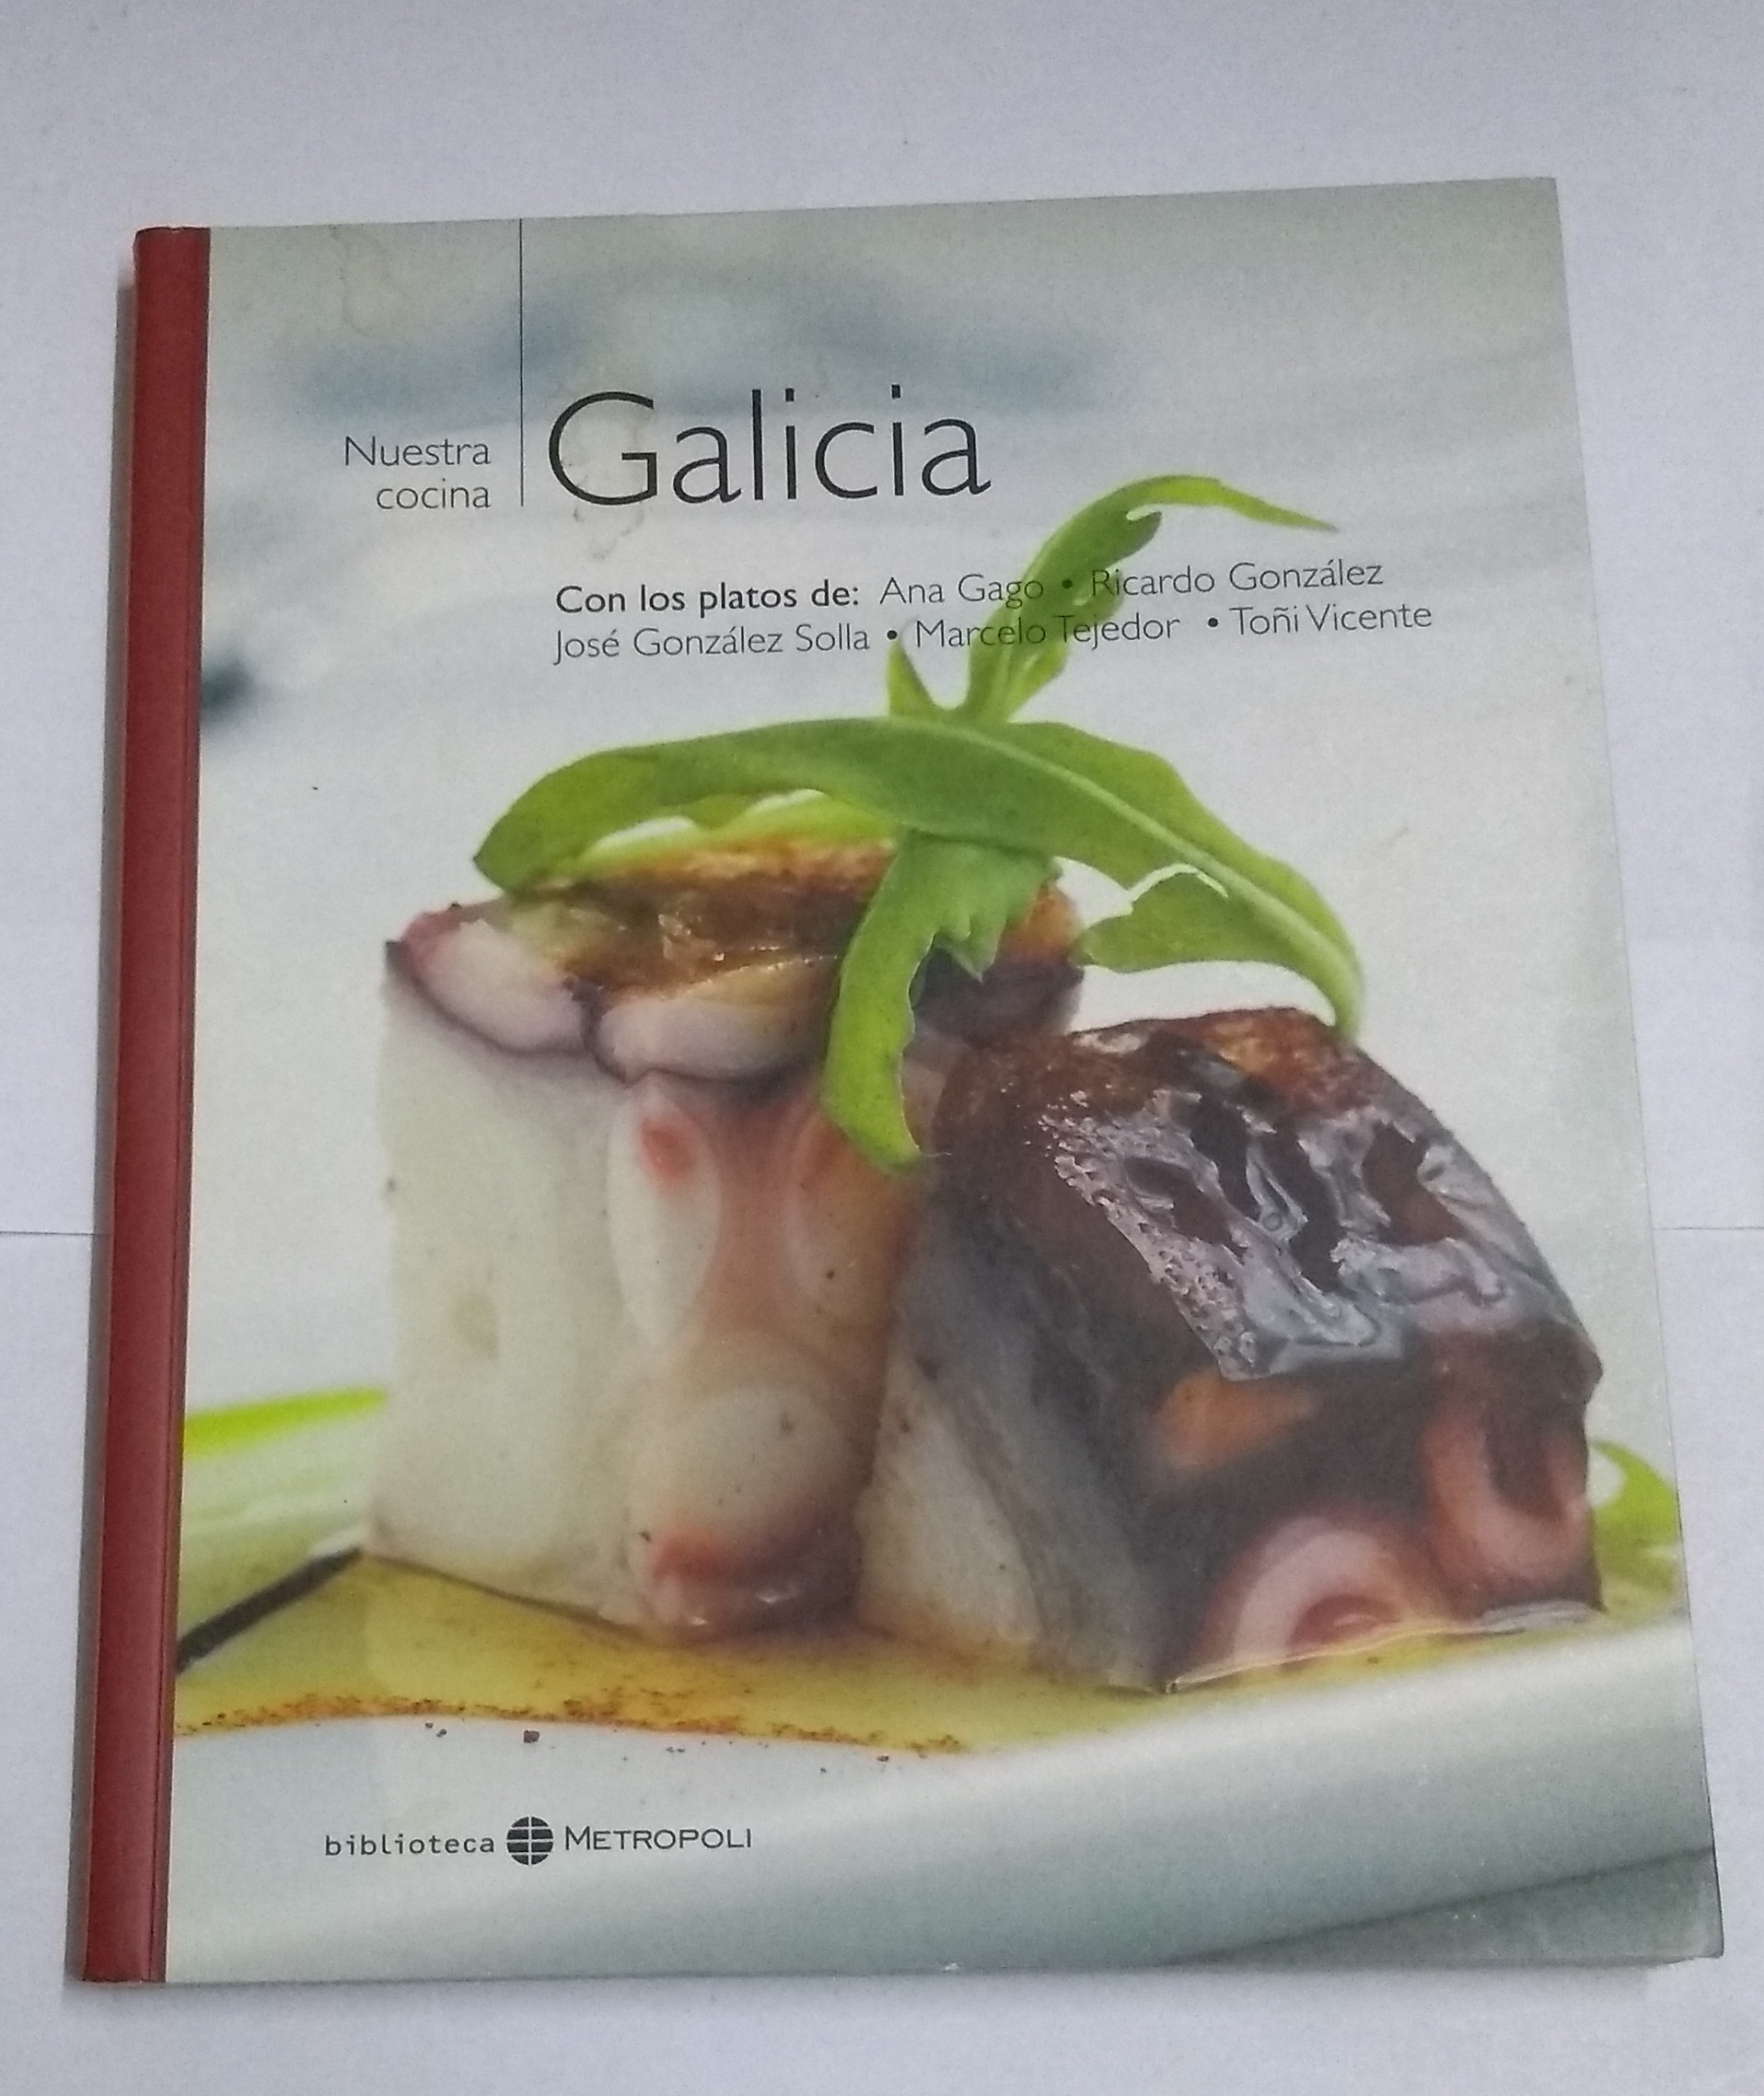 Nuestra cocina: Galicia